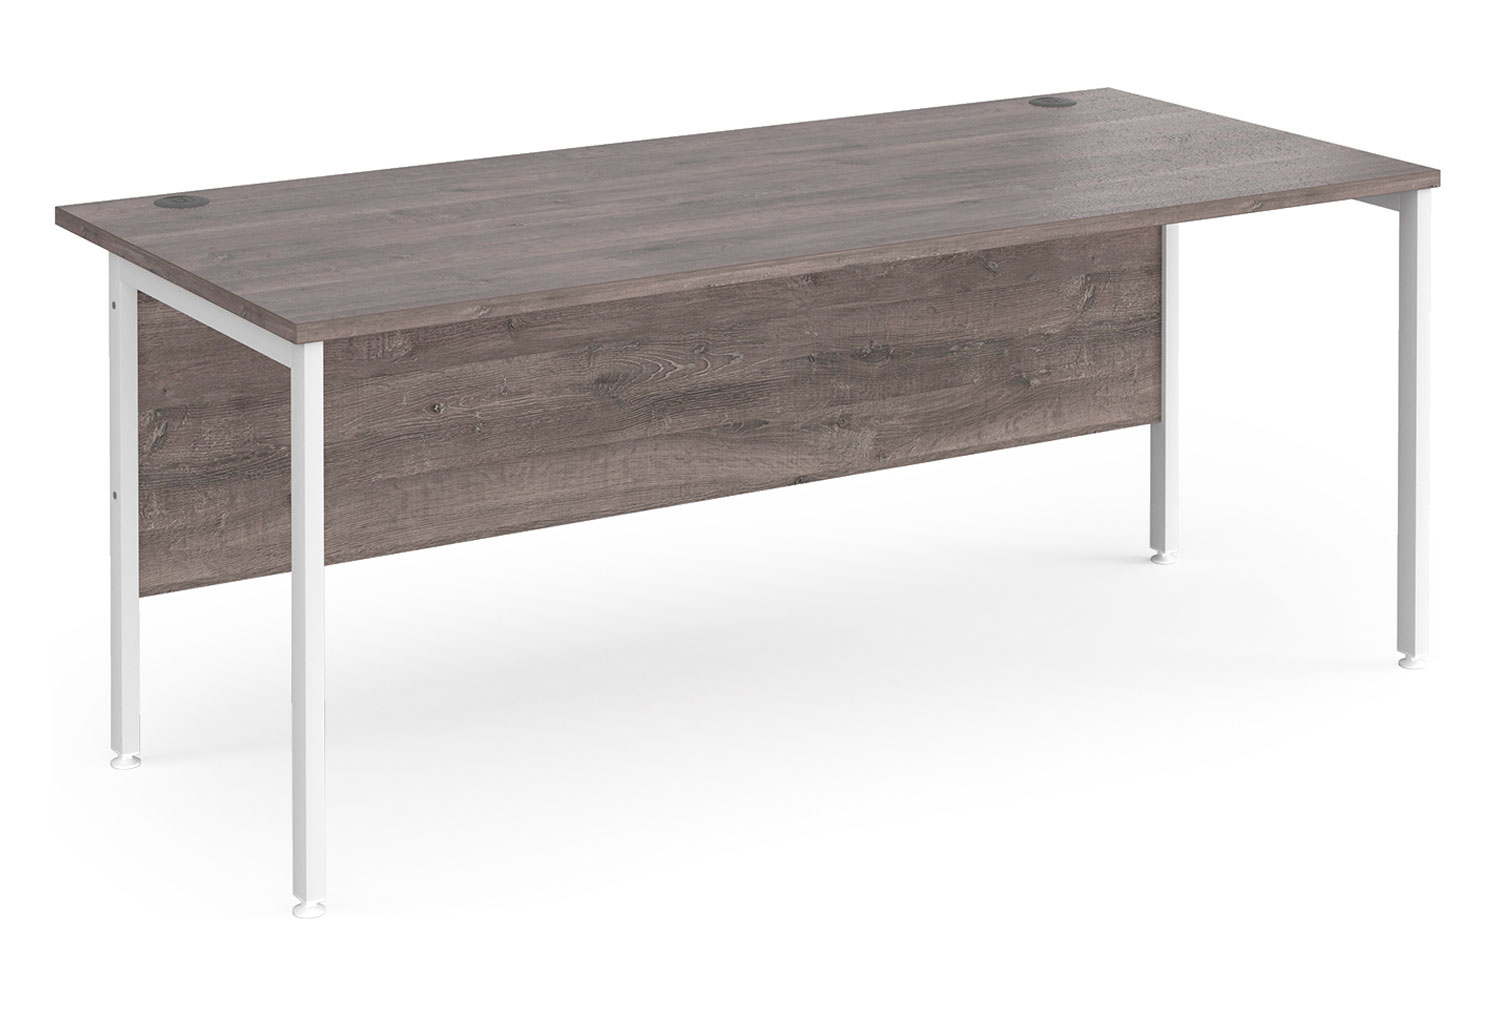 Value Line Deluxe H-Leg Rectangular Office Desk (White Legs), 180wx80dx73h (cm), Grey Oak, Fully Installed